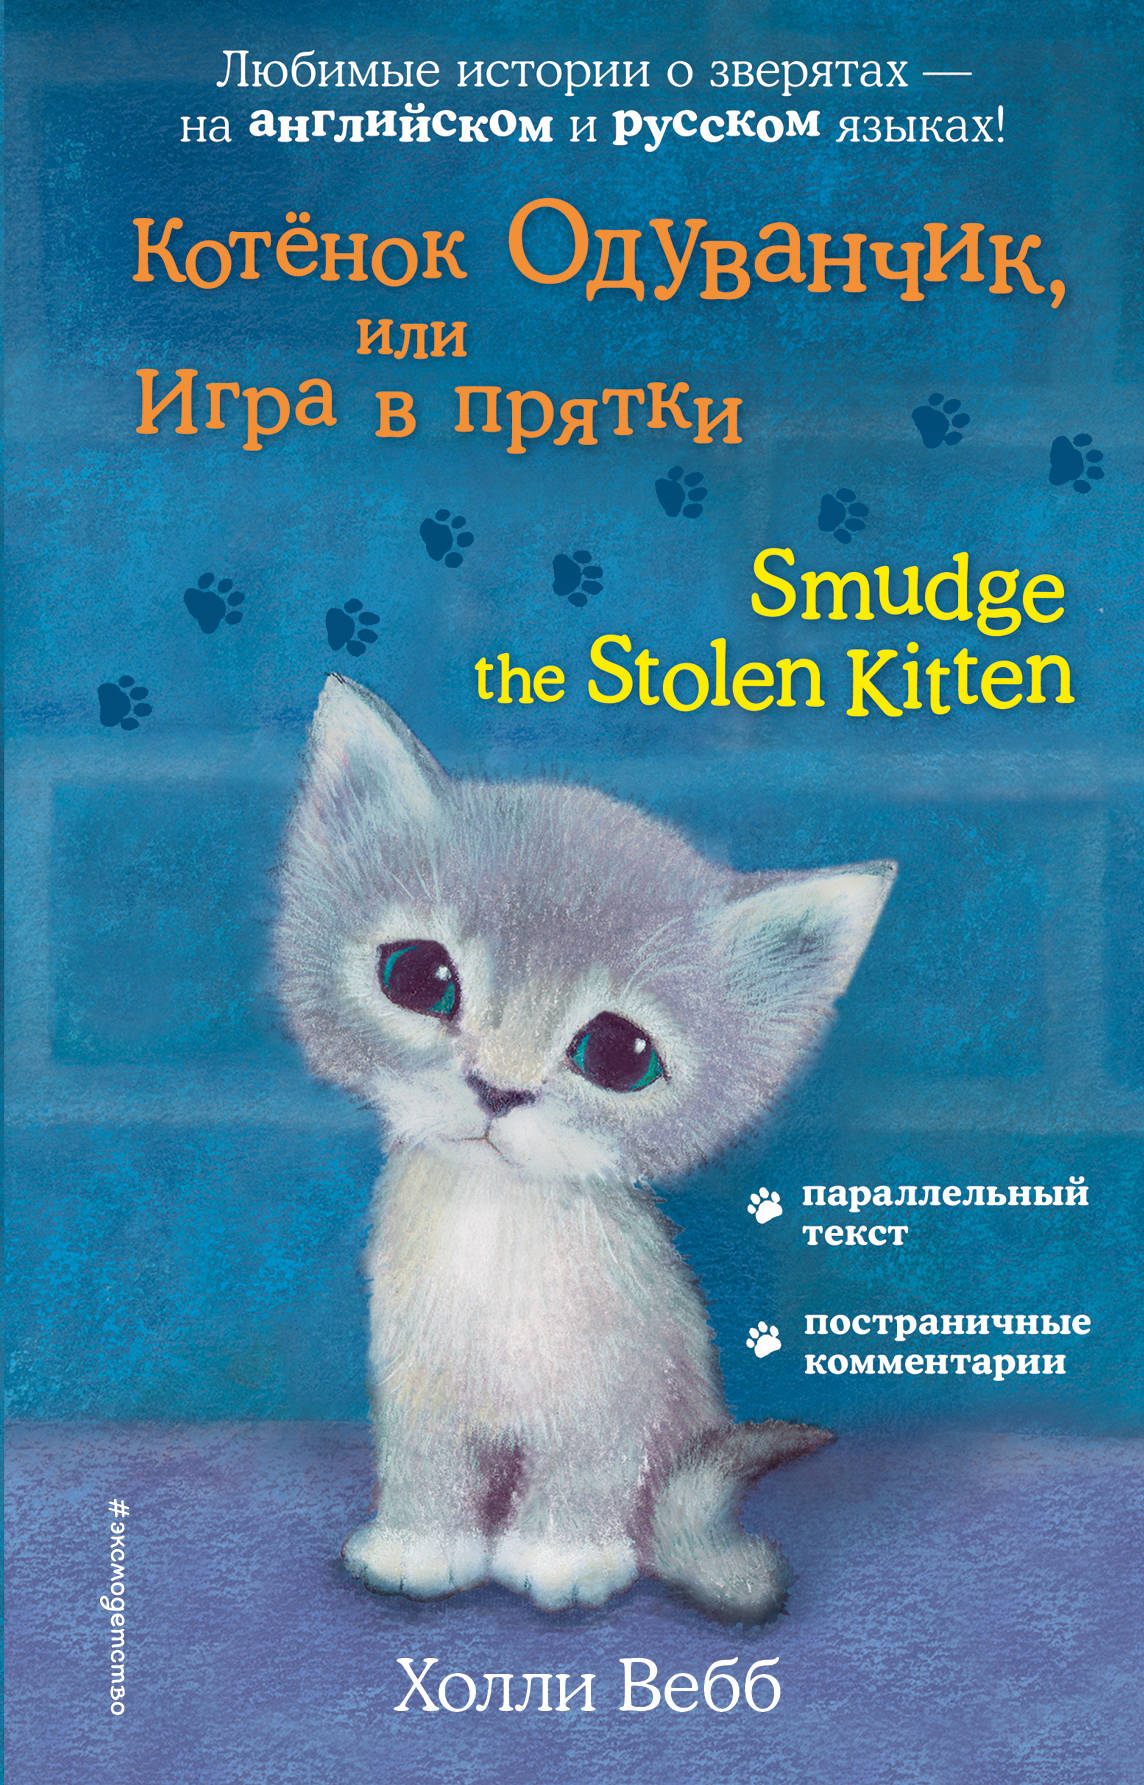 Котенок Одуванчик, или Игра в прятки = Smudge the Stolen Kitten